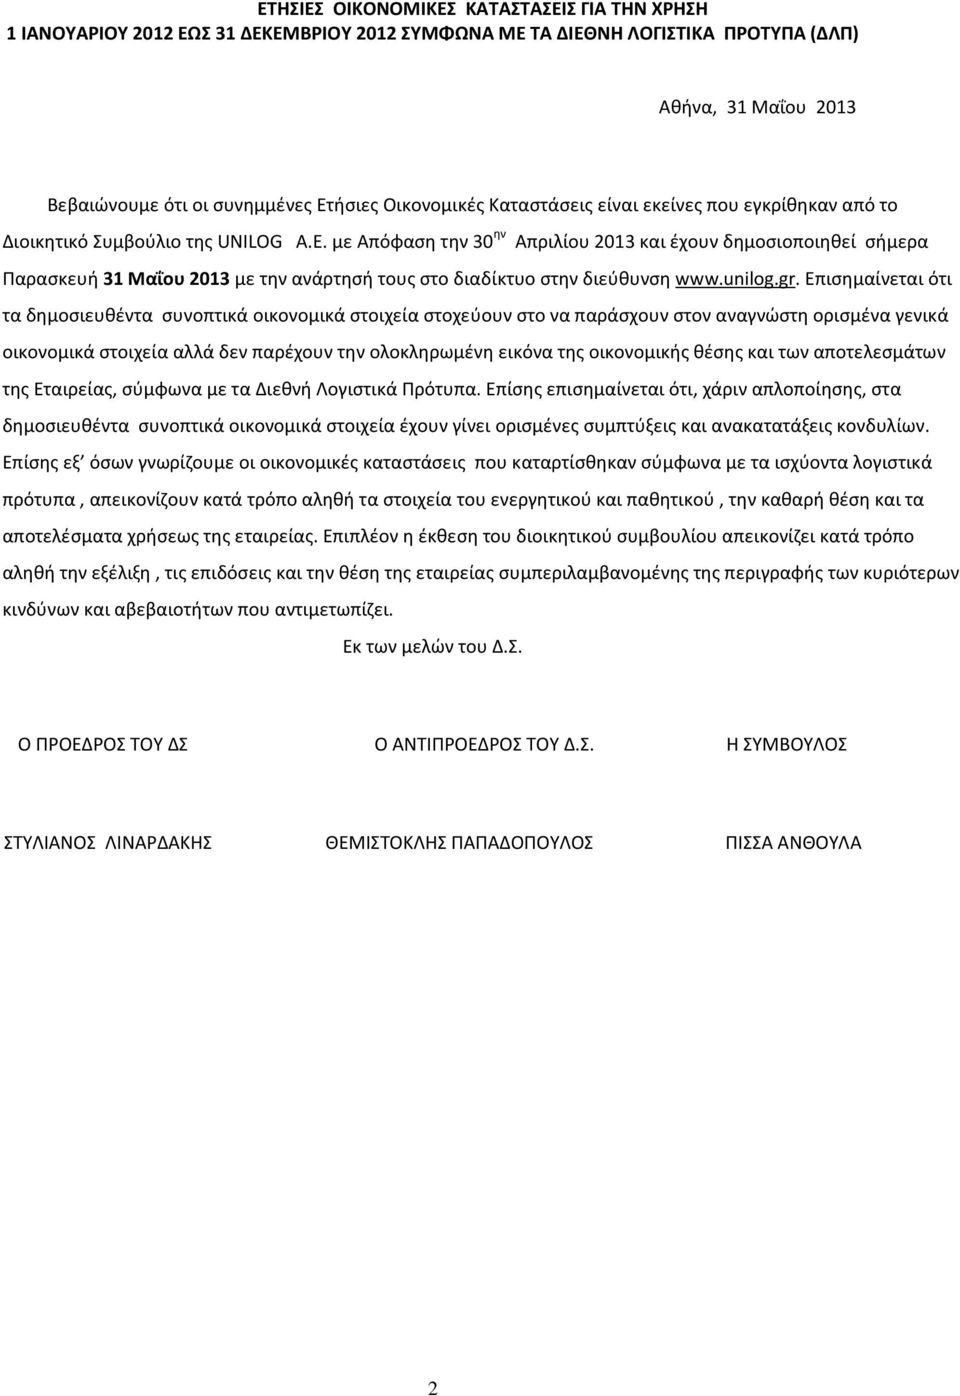 με Απόφαση την 30 ην Απριλίου 2013 και έχουν δημοσιοποιηθεί σήμερα Παρασκευή 31 Μαΐου 2013 με την ανάρτησή τους στο διαδίκτυο στην διεύθυνση www.unilog.gr.